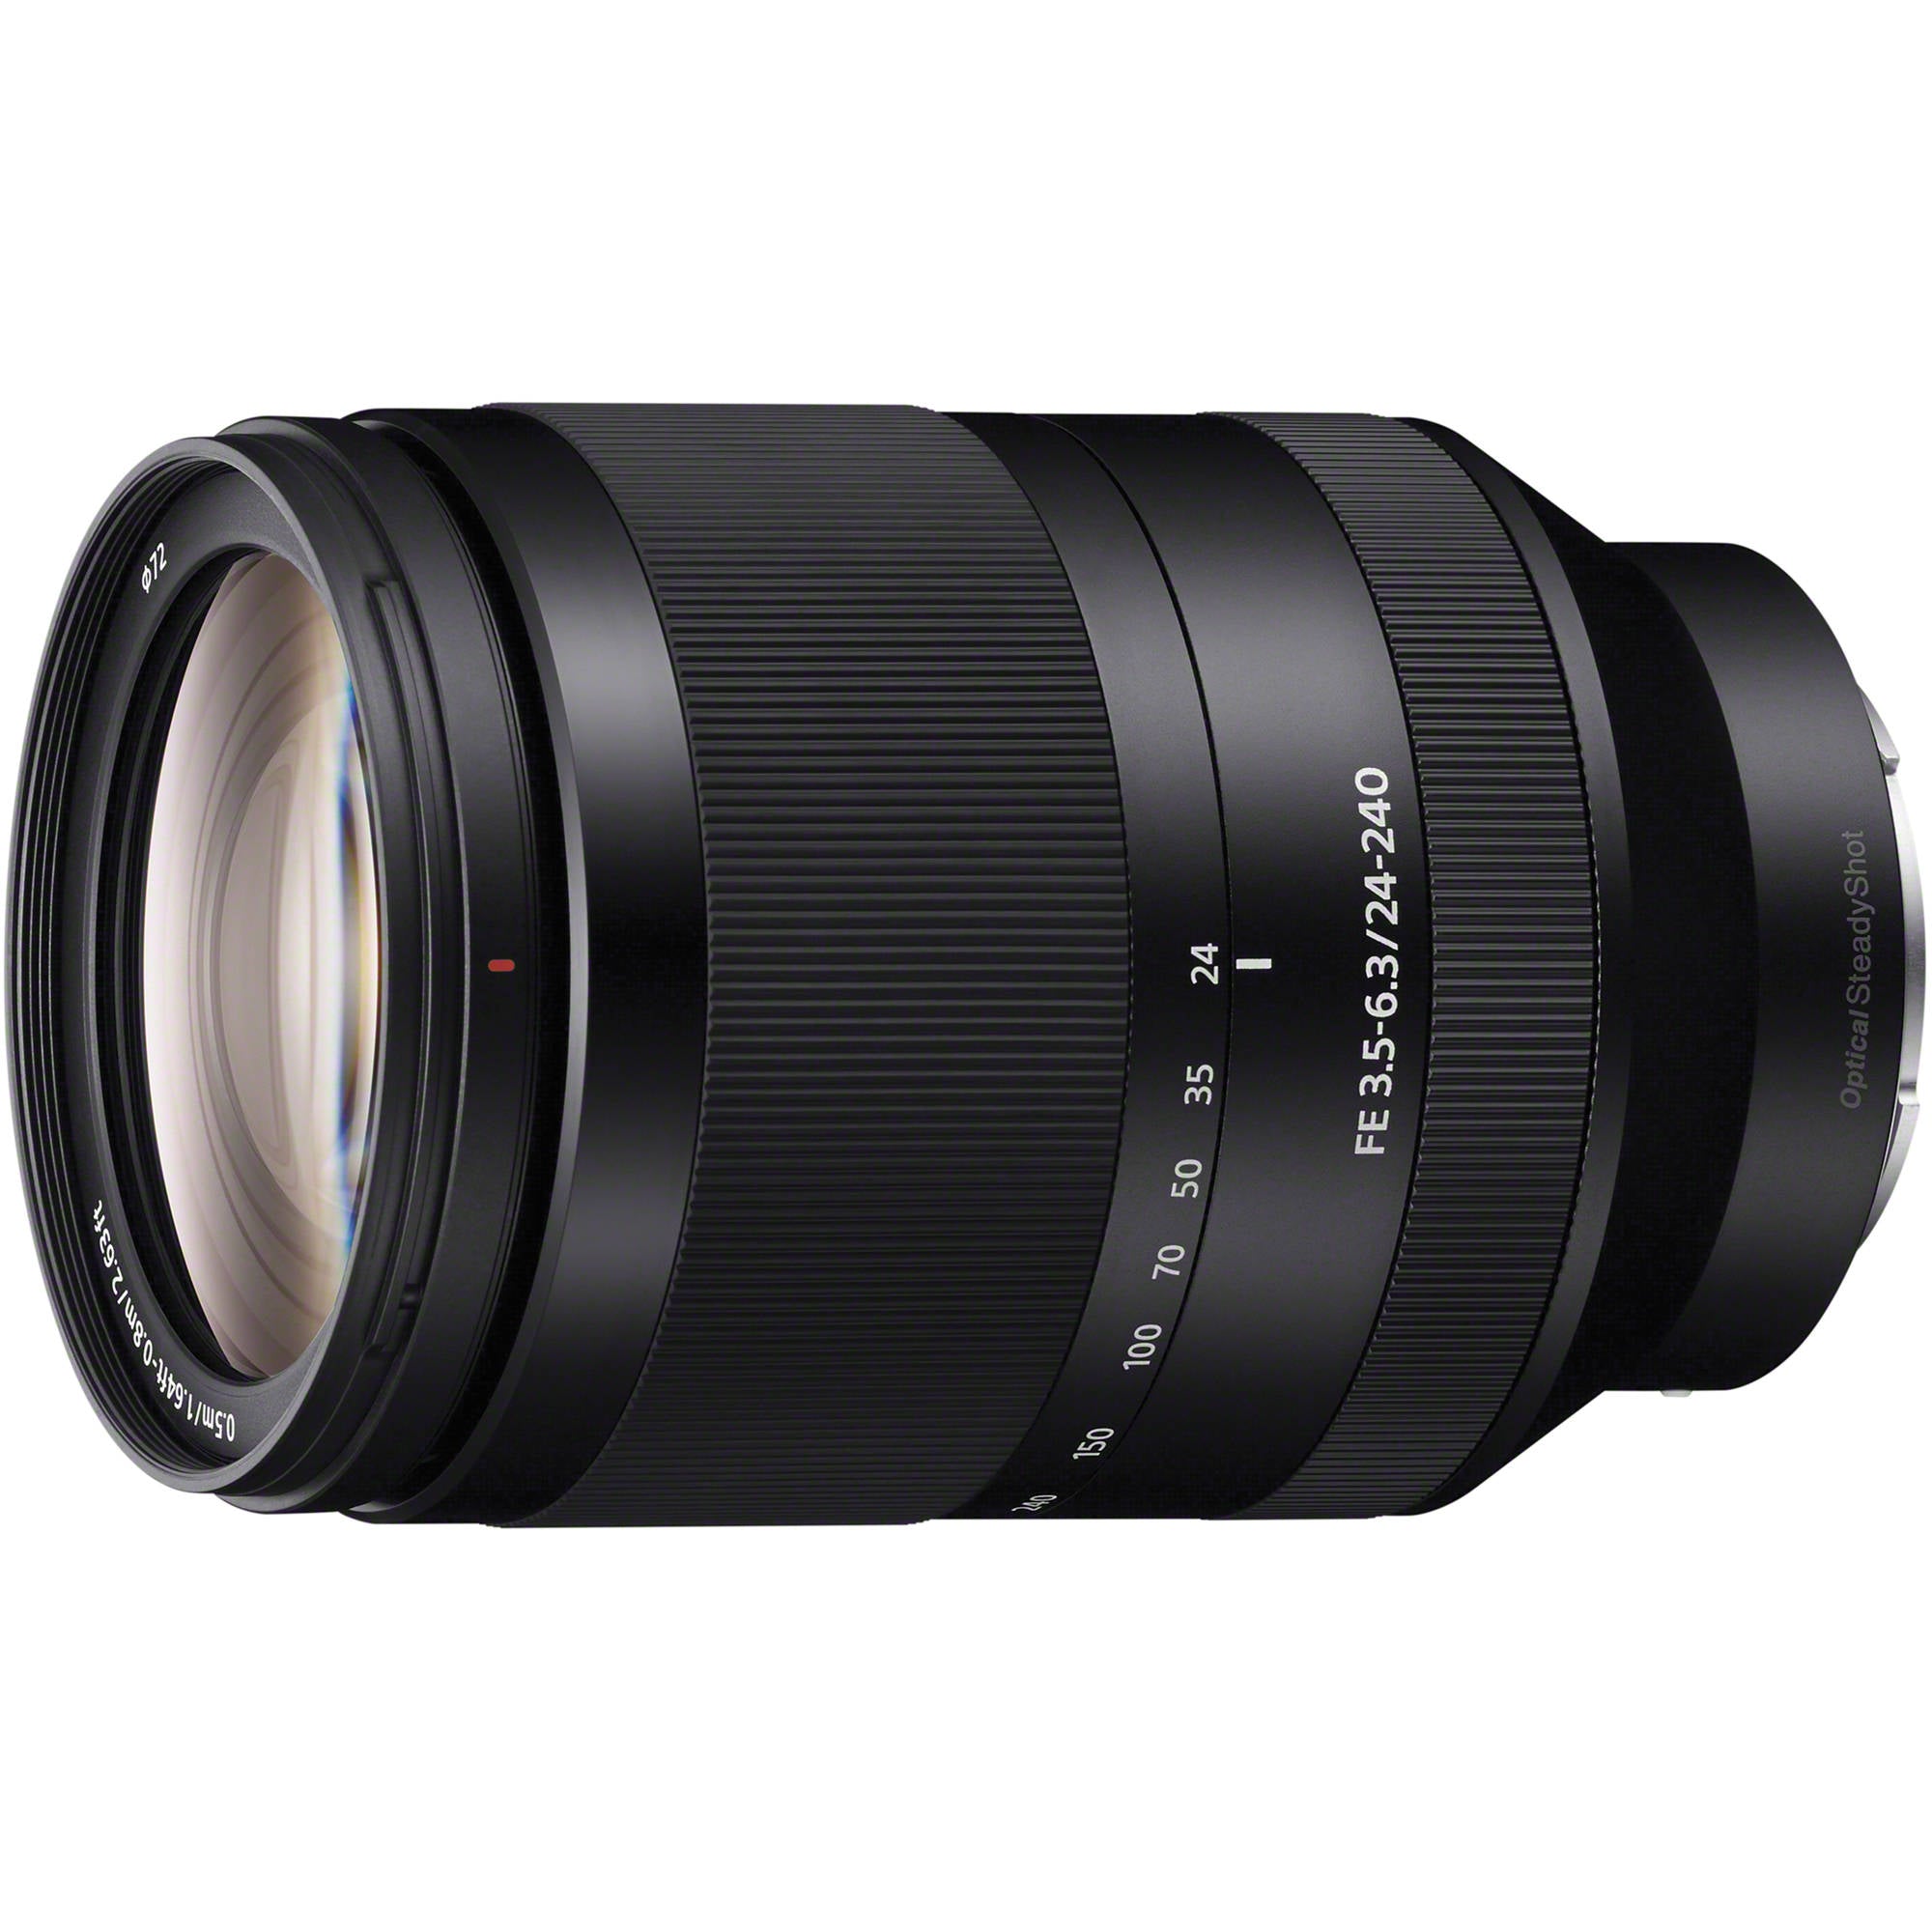 Sony FE 24-240mm f/3.5-6.3 OSS Lens Camera tek